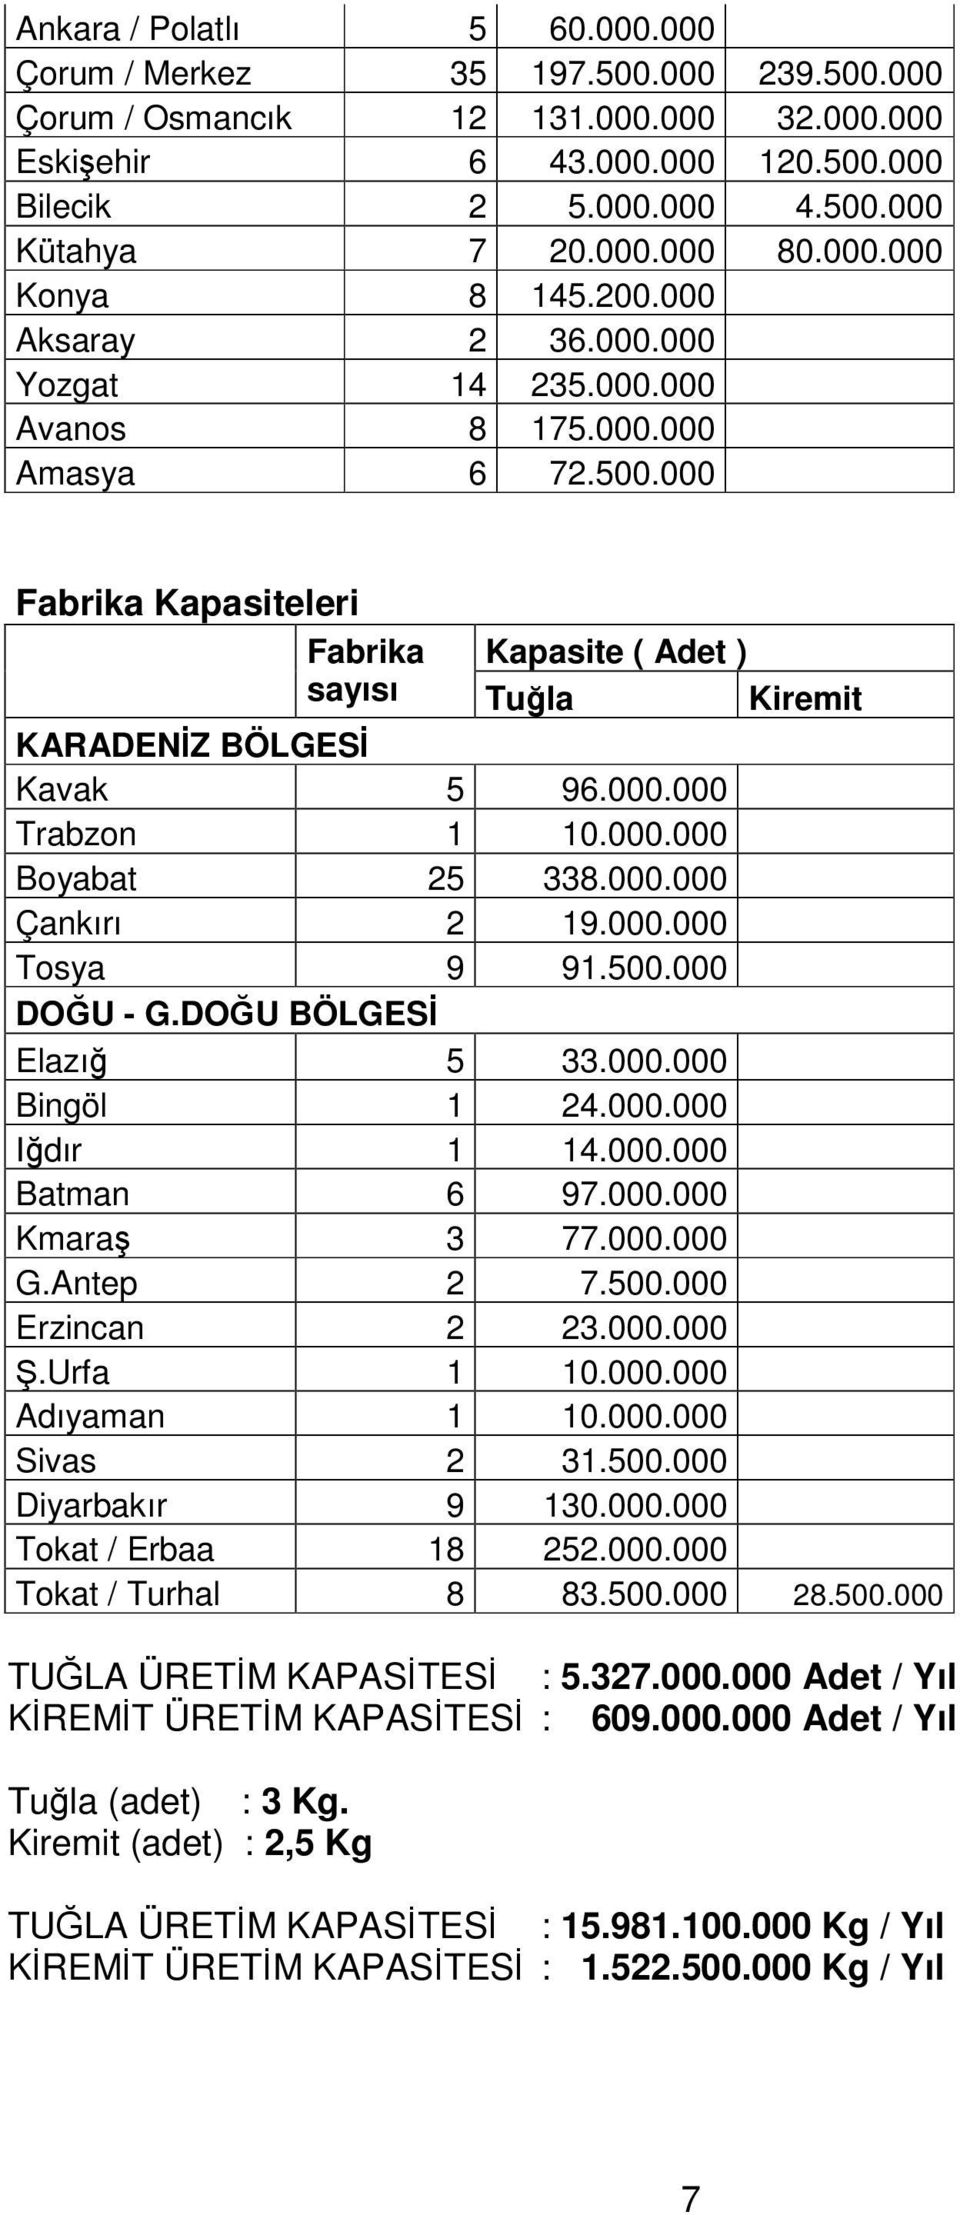 000 Fabrika Kapasiteleri Fabrika Kapasite ( Adet ) sayısı Tula Kiremit KARADENZ BÖLGES Kavak 5 96.000.000 Trabzon 1 10.000.000 Boyabat 25 338.000.000 Çankırı 2 19.000.000 Tosya 9 91.500.000 DOU - G.